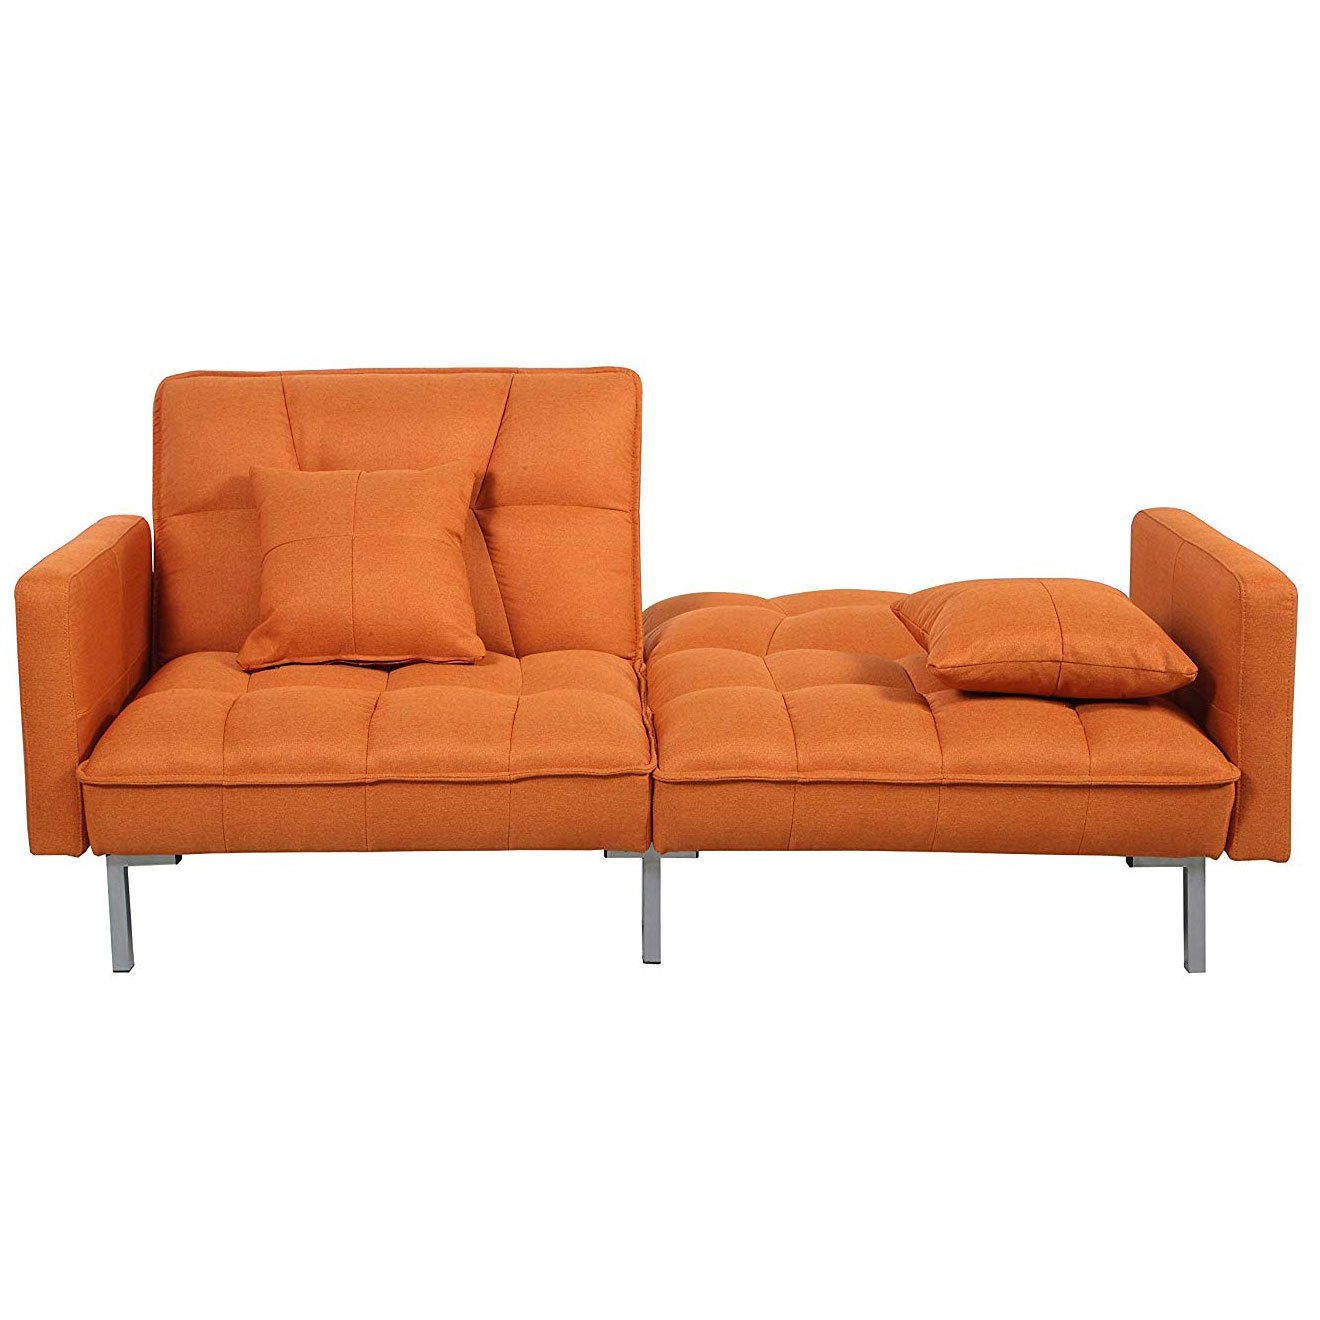 Brown Plush Tufted Velvet Splitback Living Room Futon Sleeper Couch w/ Pillows 